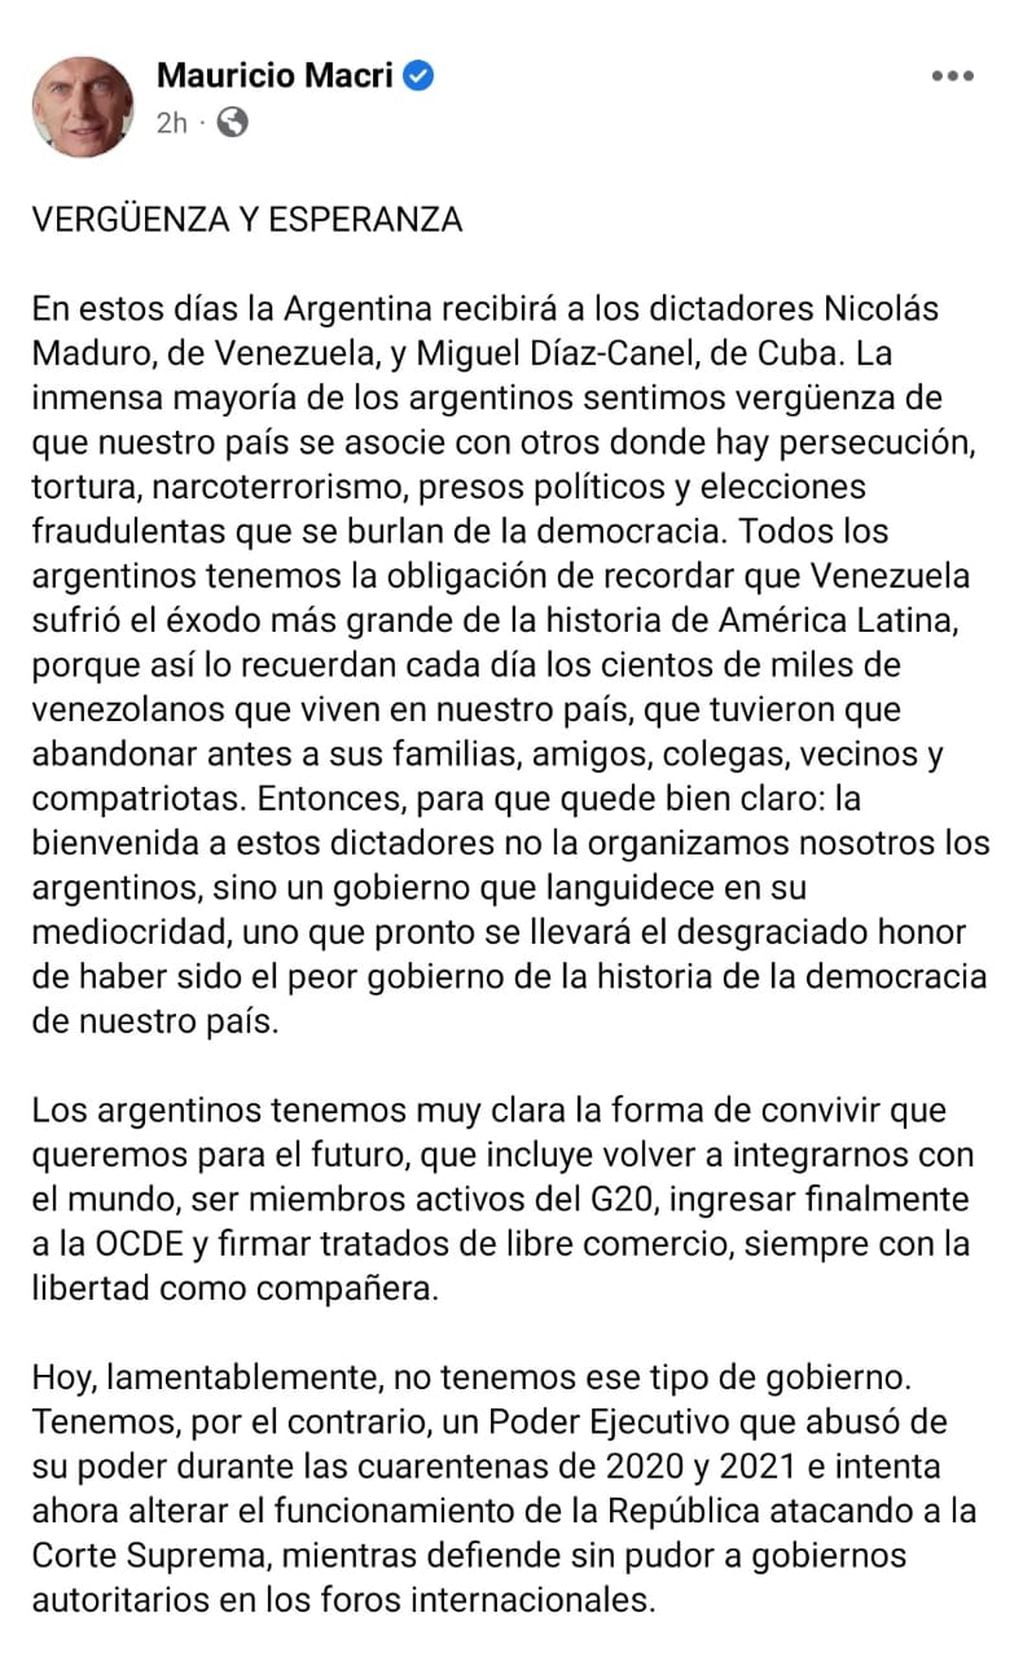 Mauricio Macri repudió la visita de Nicolás Maduro y Miguel Díaz-Canel a Argentina.